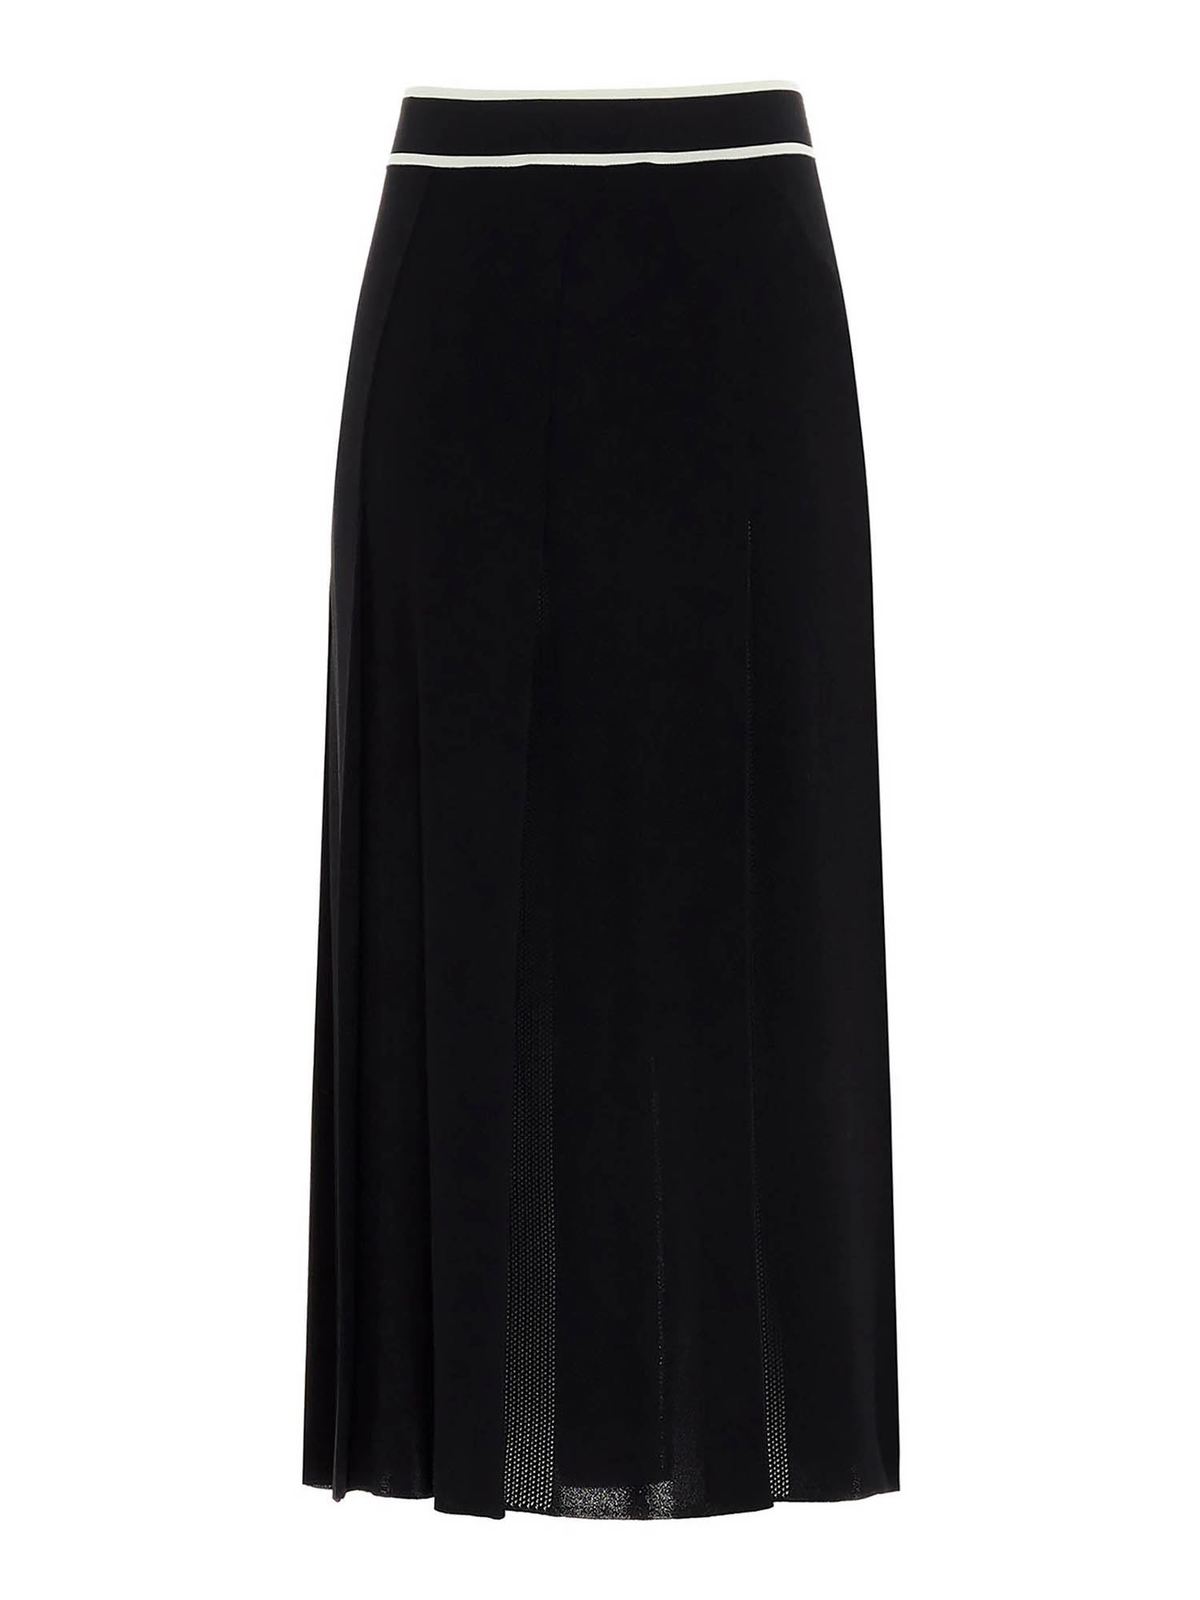 Gucci - Tucks skirt in black - Long skirts - 629429XKBBZ1289 | iKRIX.com